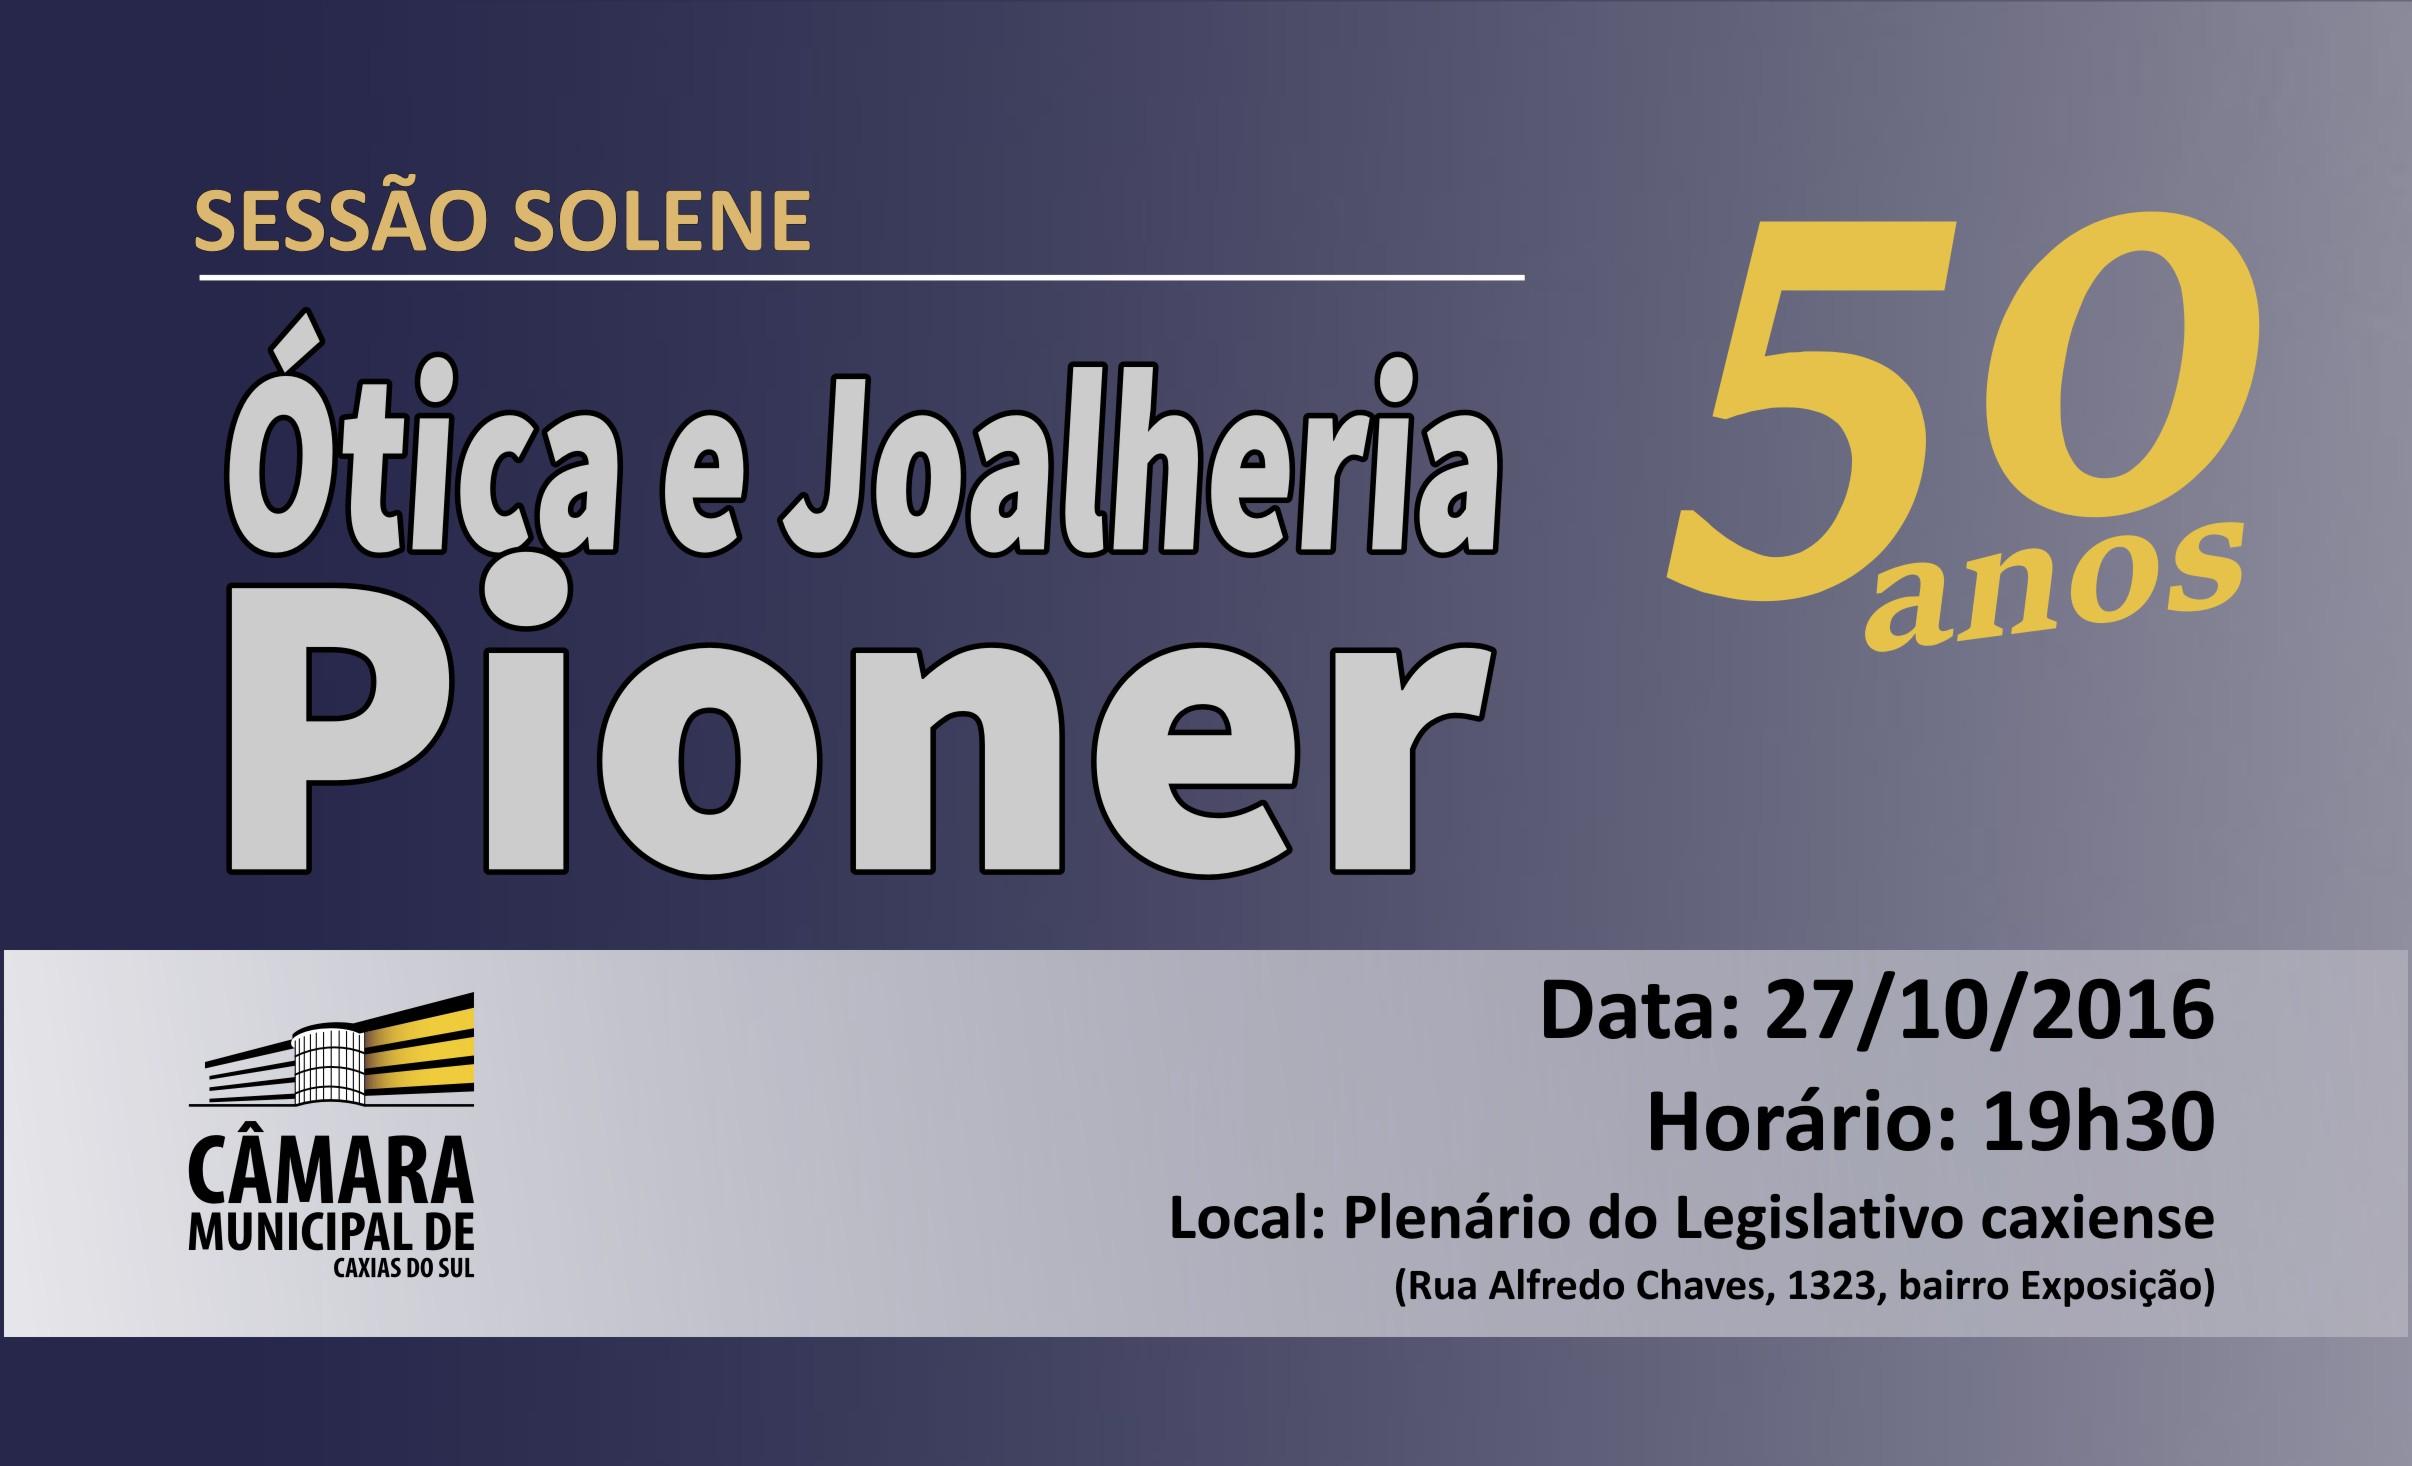 Aniversário de 50 anos da Ótica e Joalheria Pioner será celebrado no Legislativo caxiense nesta quinta-feira